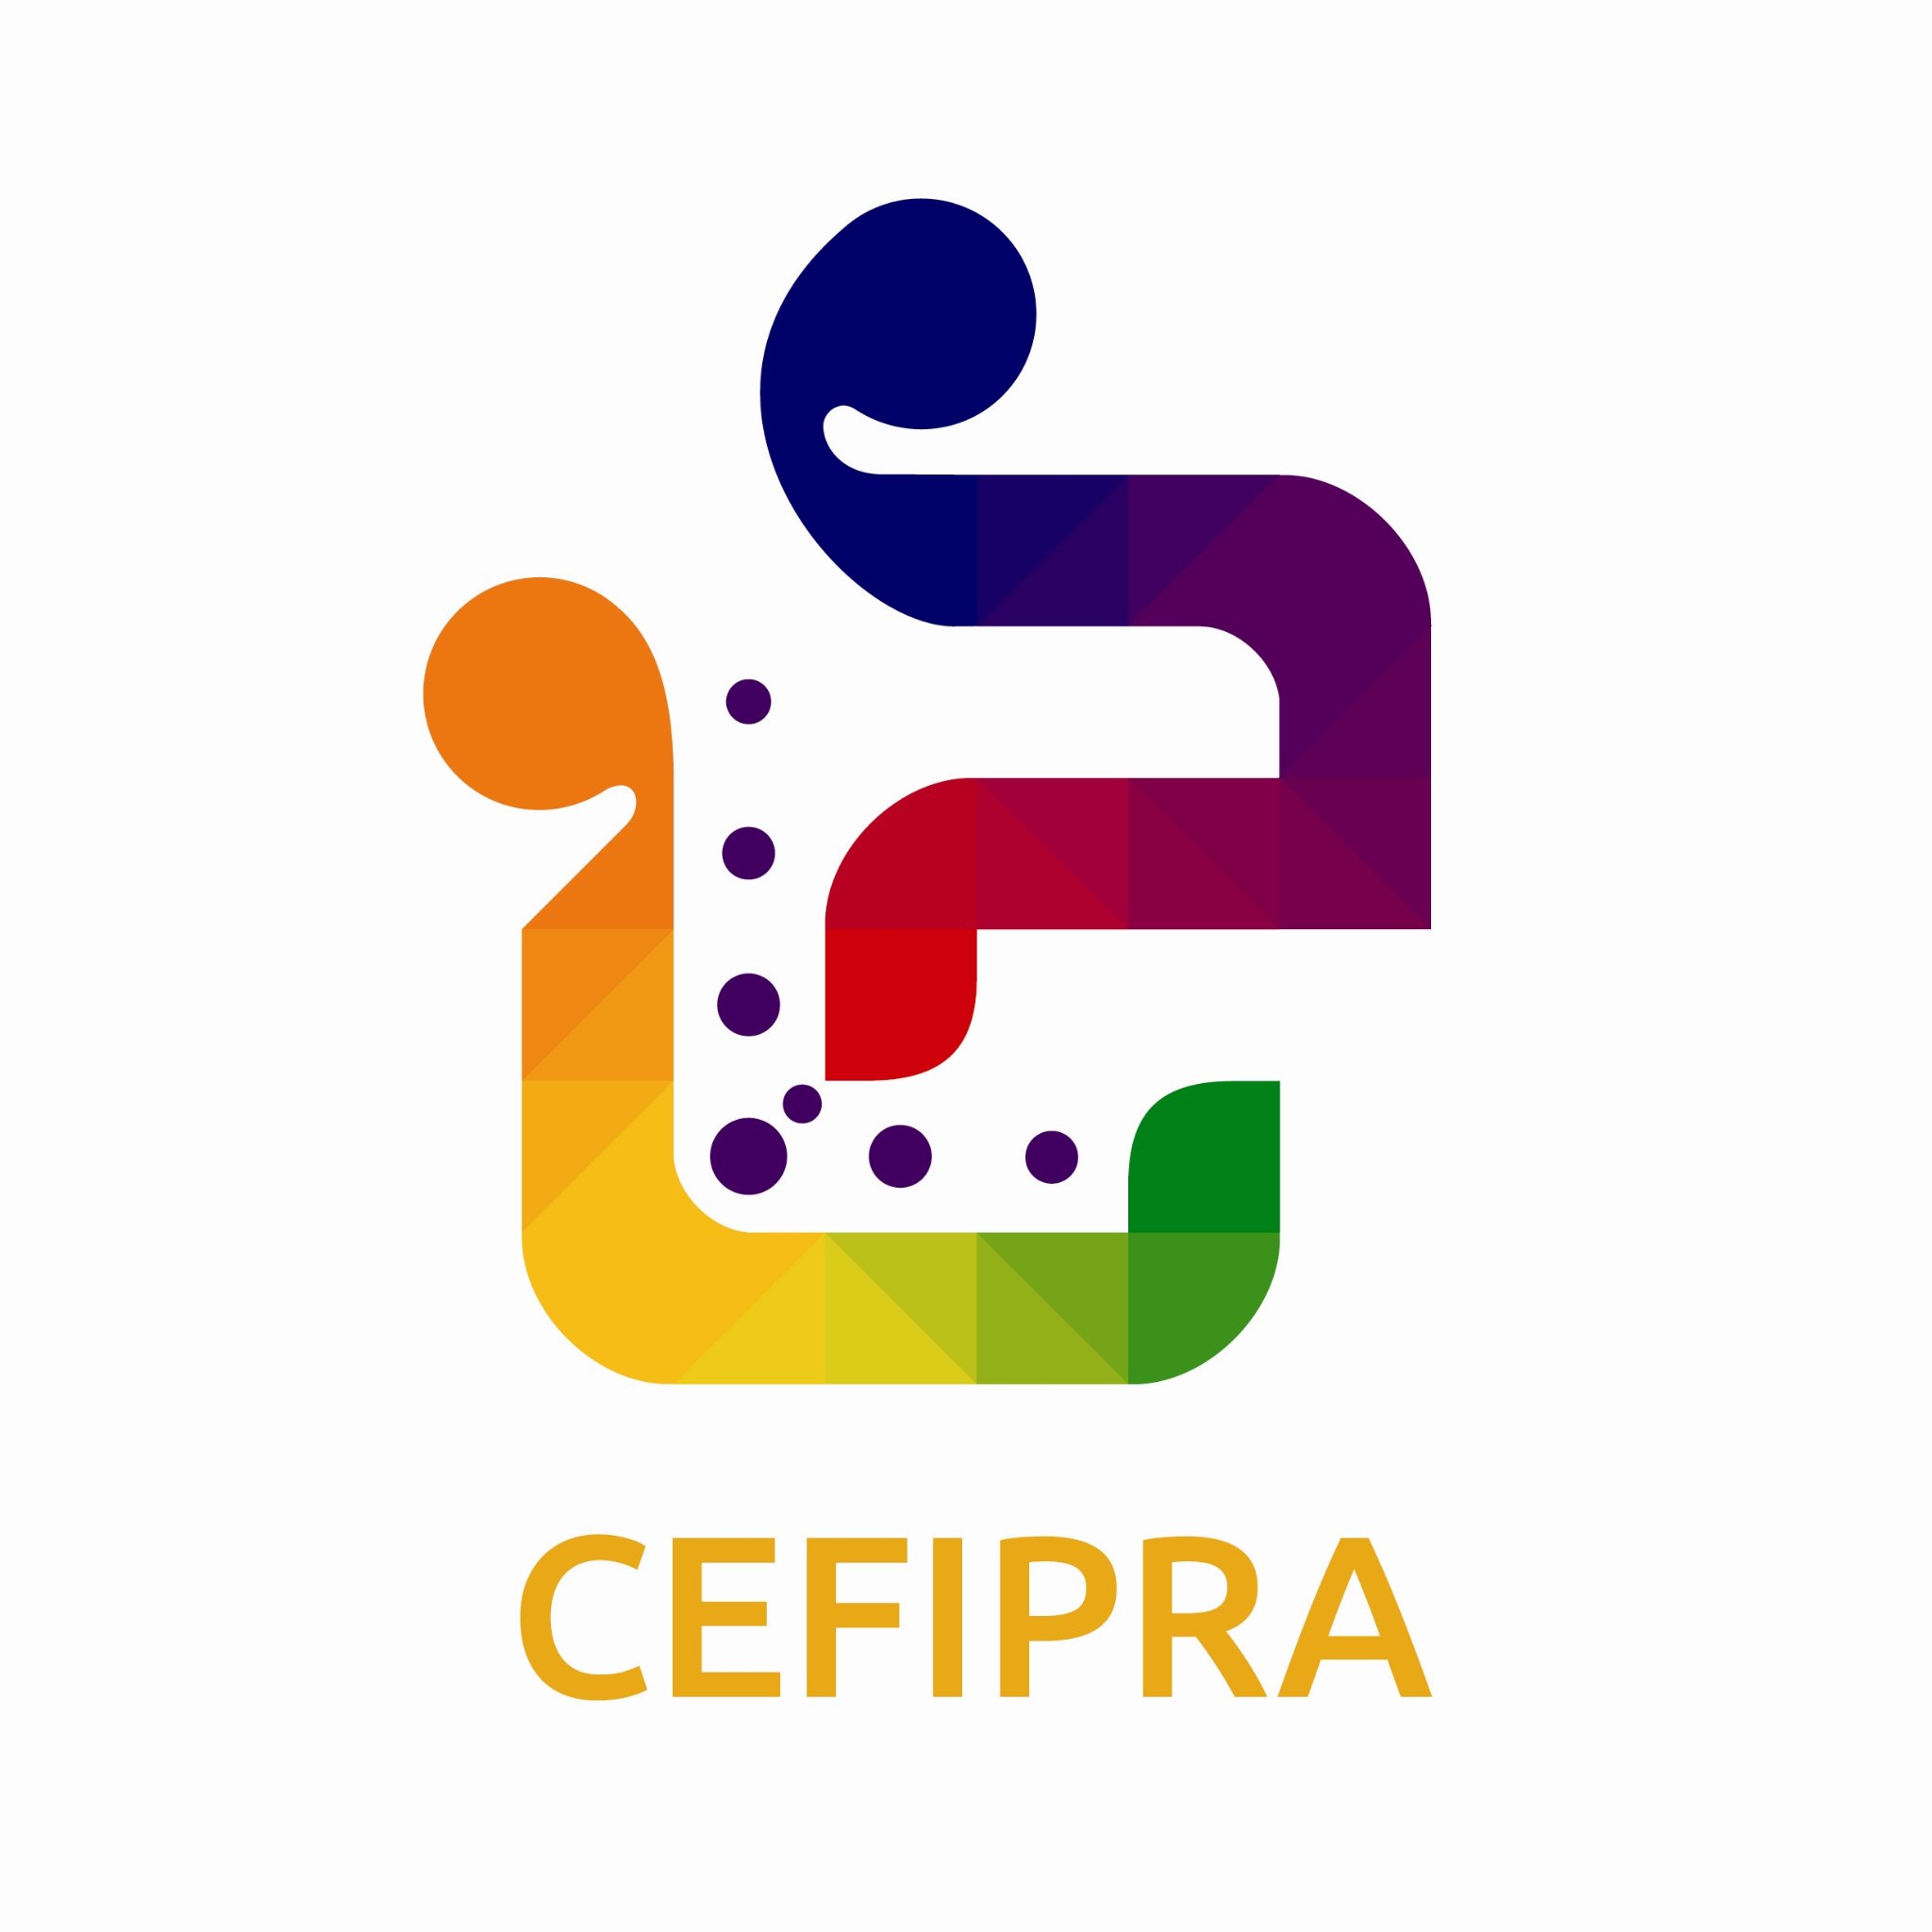 IFCPAR/CEFIPRA